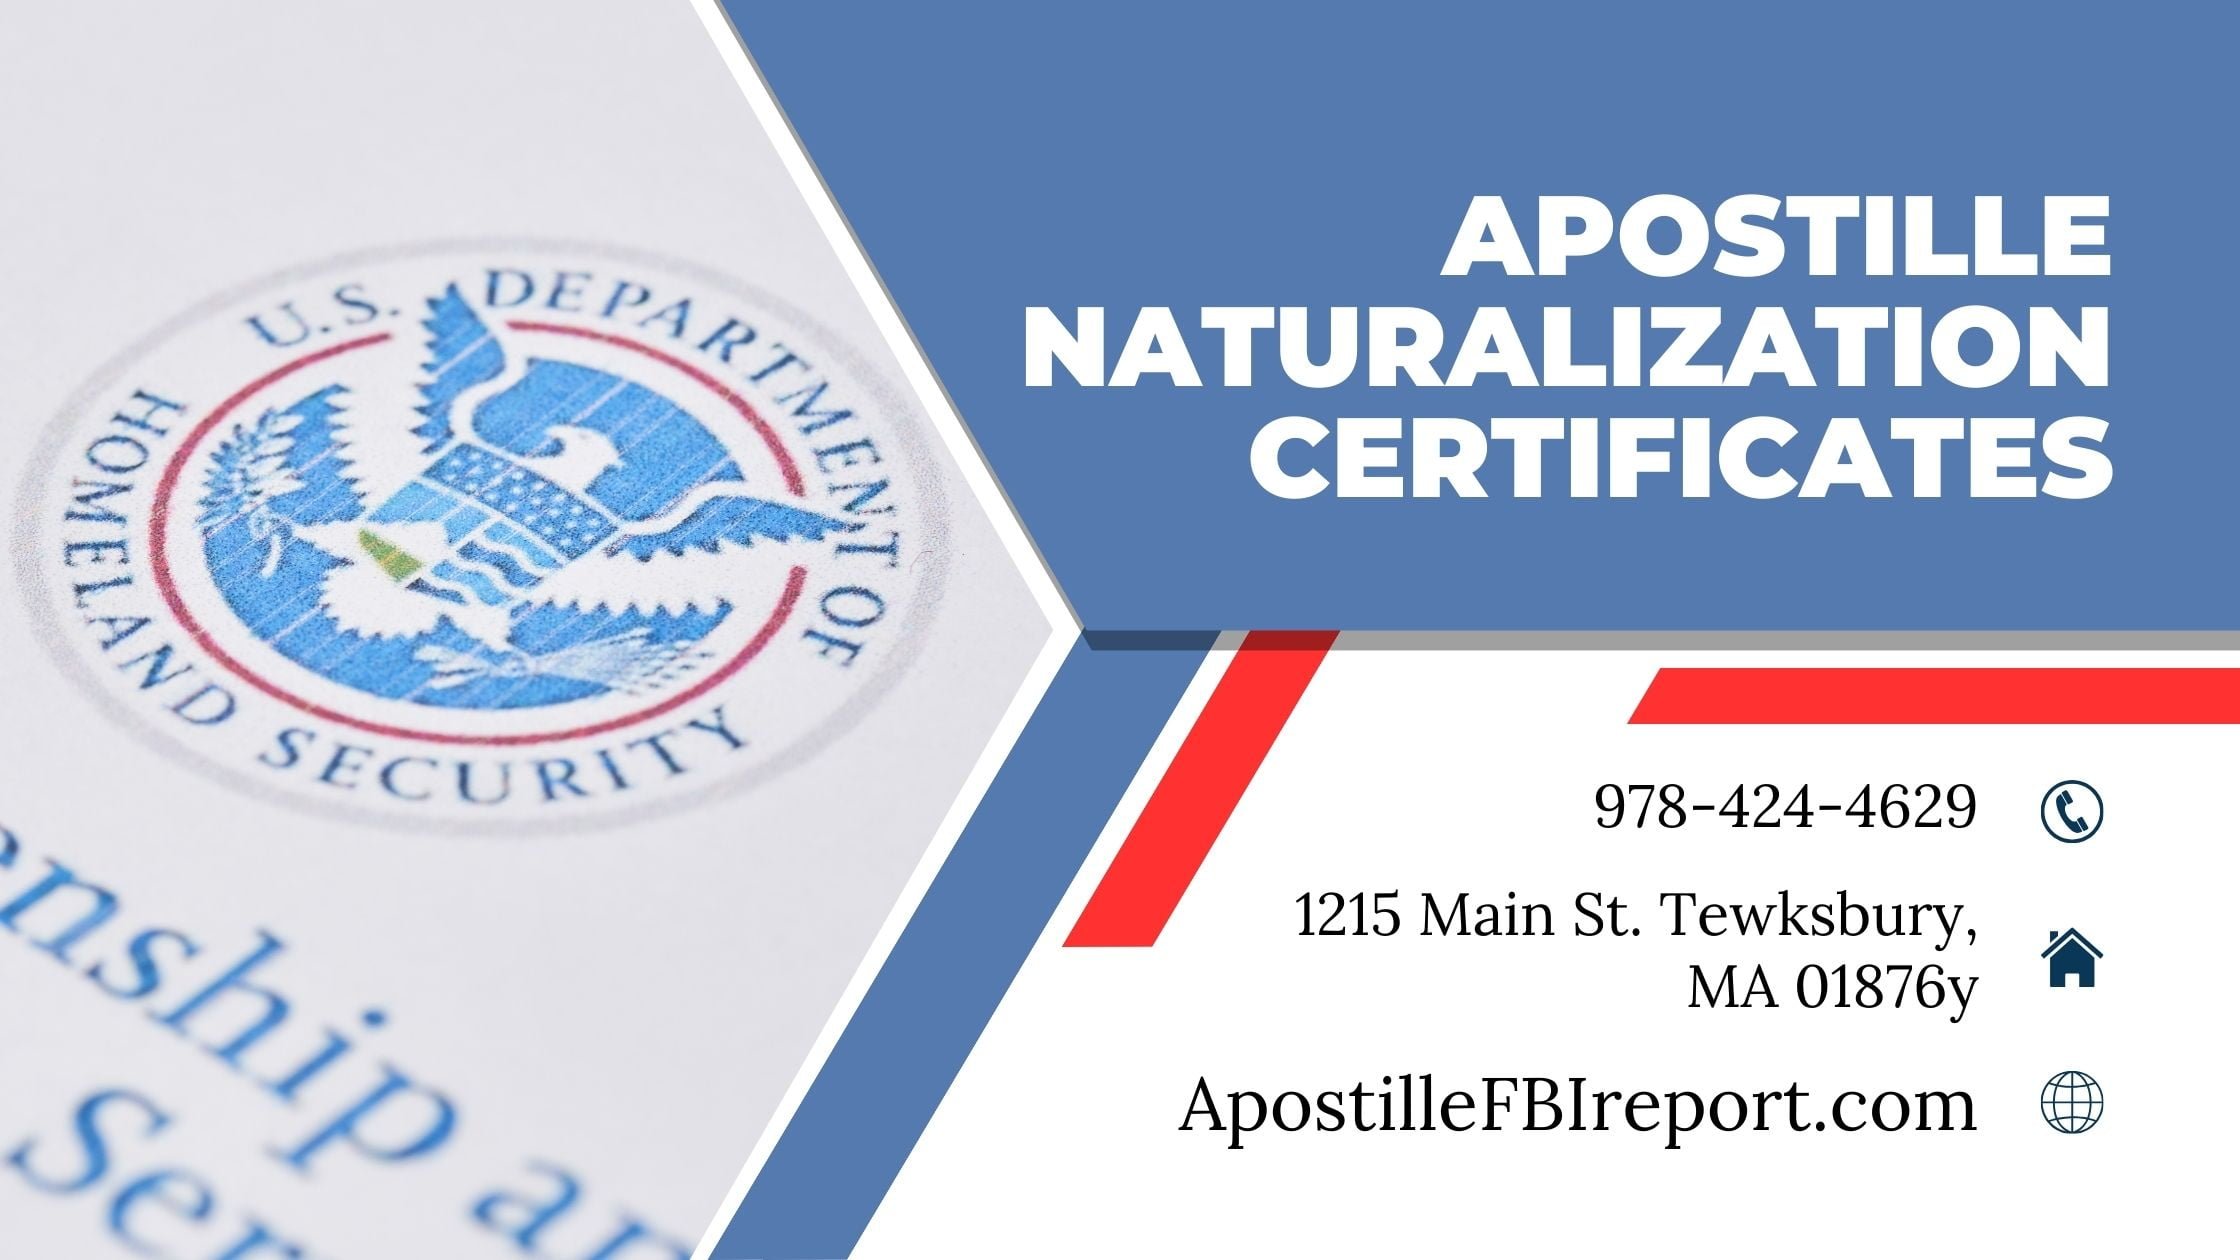 Naturalization Certificate Apostille Service In MA, NH, RI, CA, FL - Apostille FBI Report - Apostille FBI Report